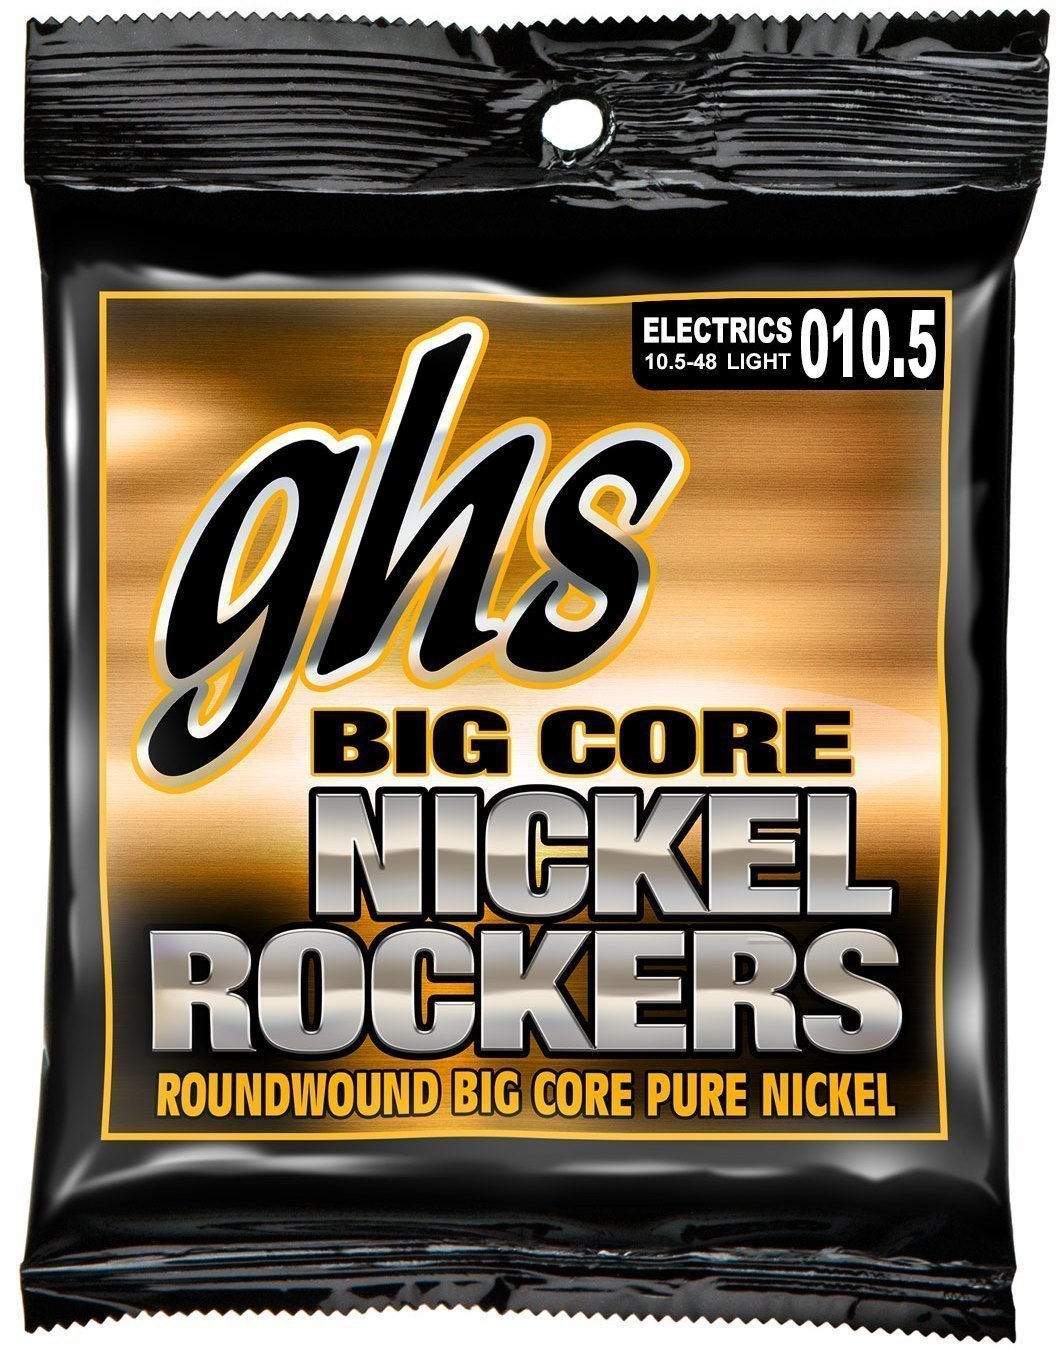 Corde Chitarra Elettrica GHS Big Core Nickel Rockers 10,5-48